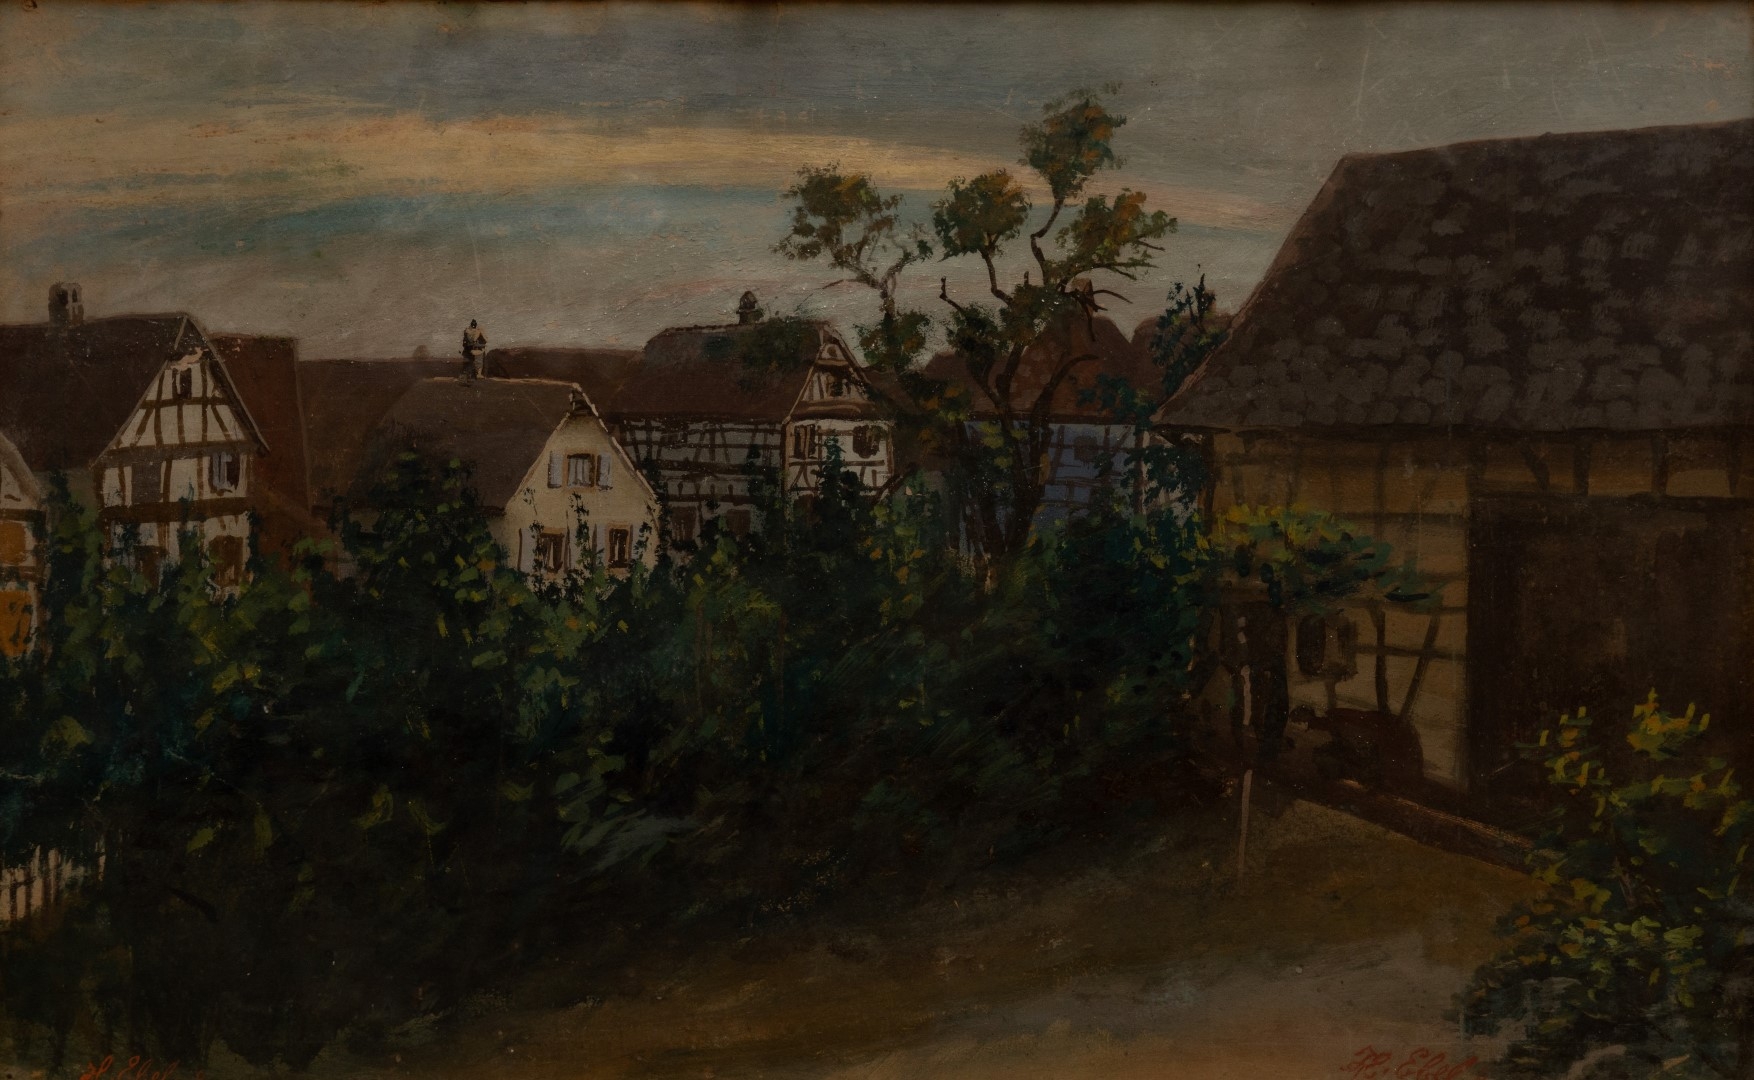 Grange et maison à  Fegersheim, 1904, tempera sur carton,47x73 cm, collection particulière.